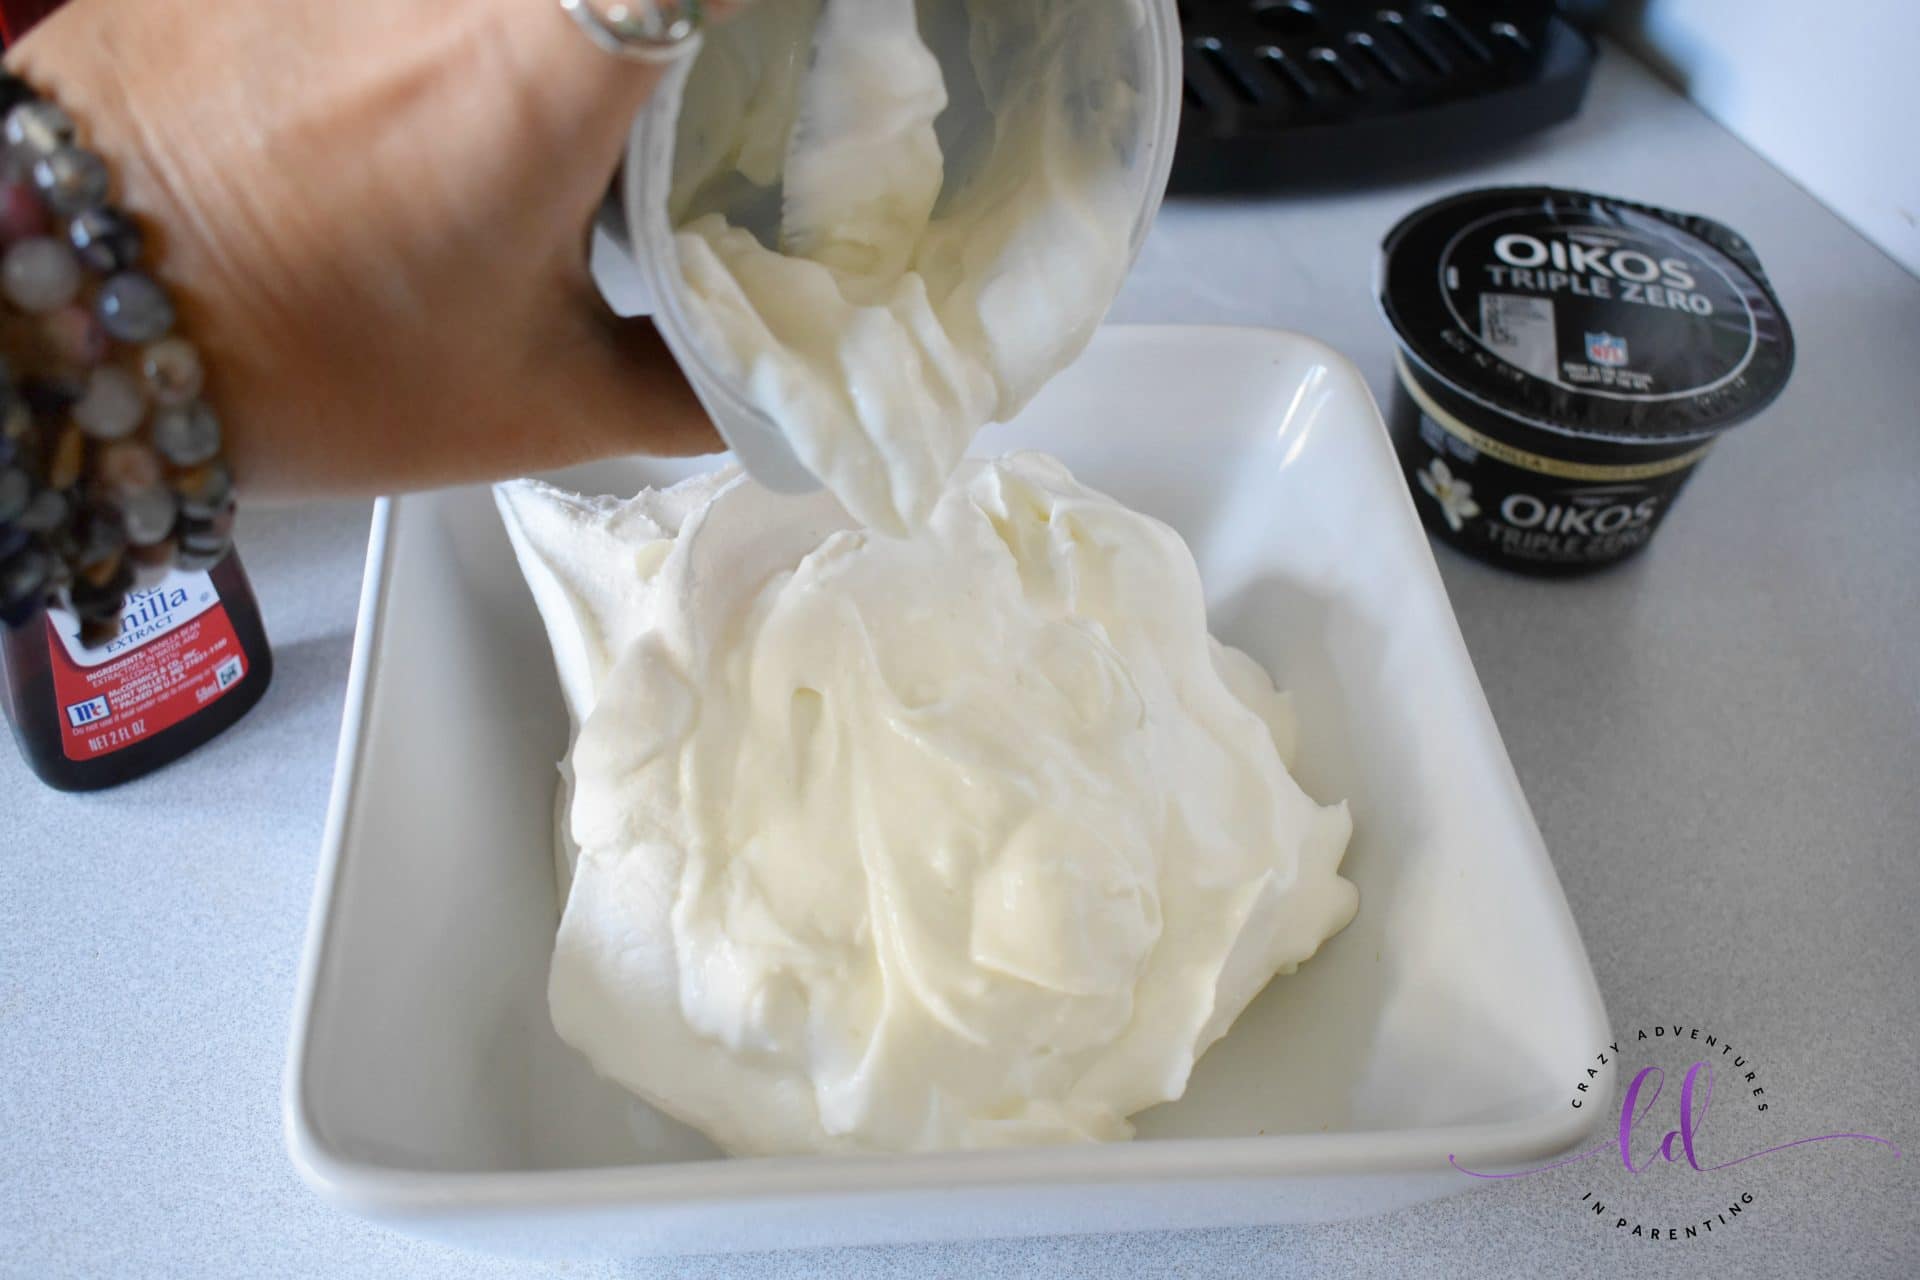 Oikos Triple Zero added to whipped cream